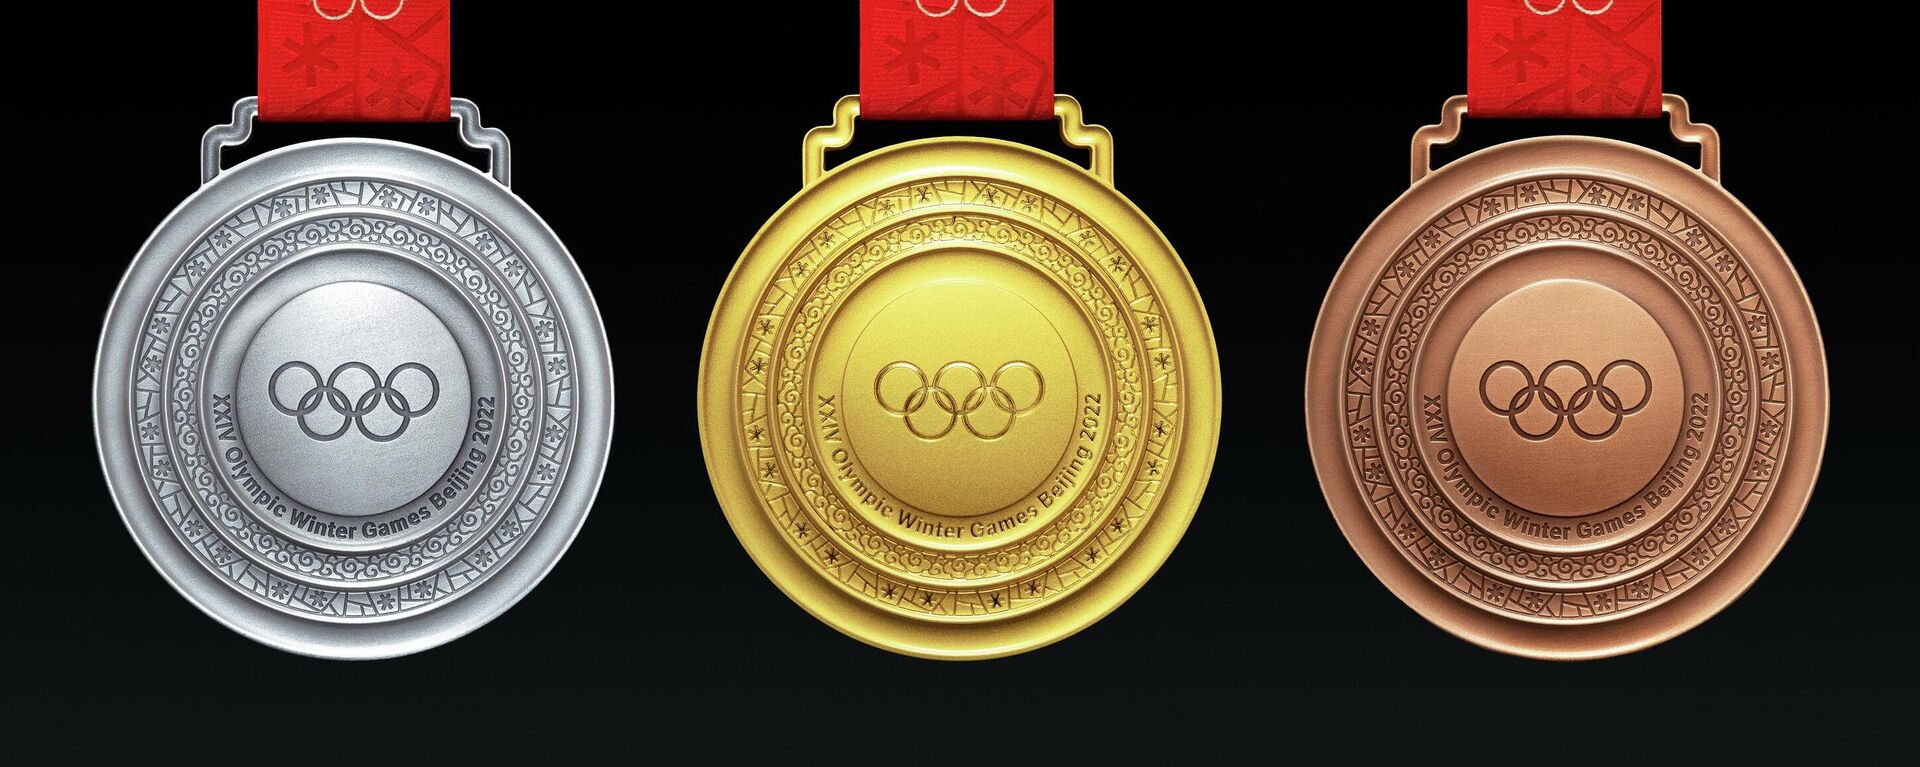 Медалі Зімовай Алімпіяды-2022 - Sputnik Беларусь, 1920, 27.10.2021